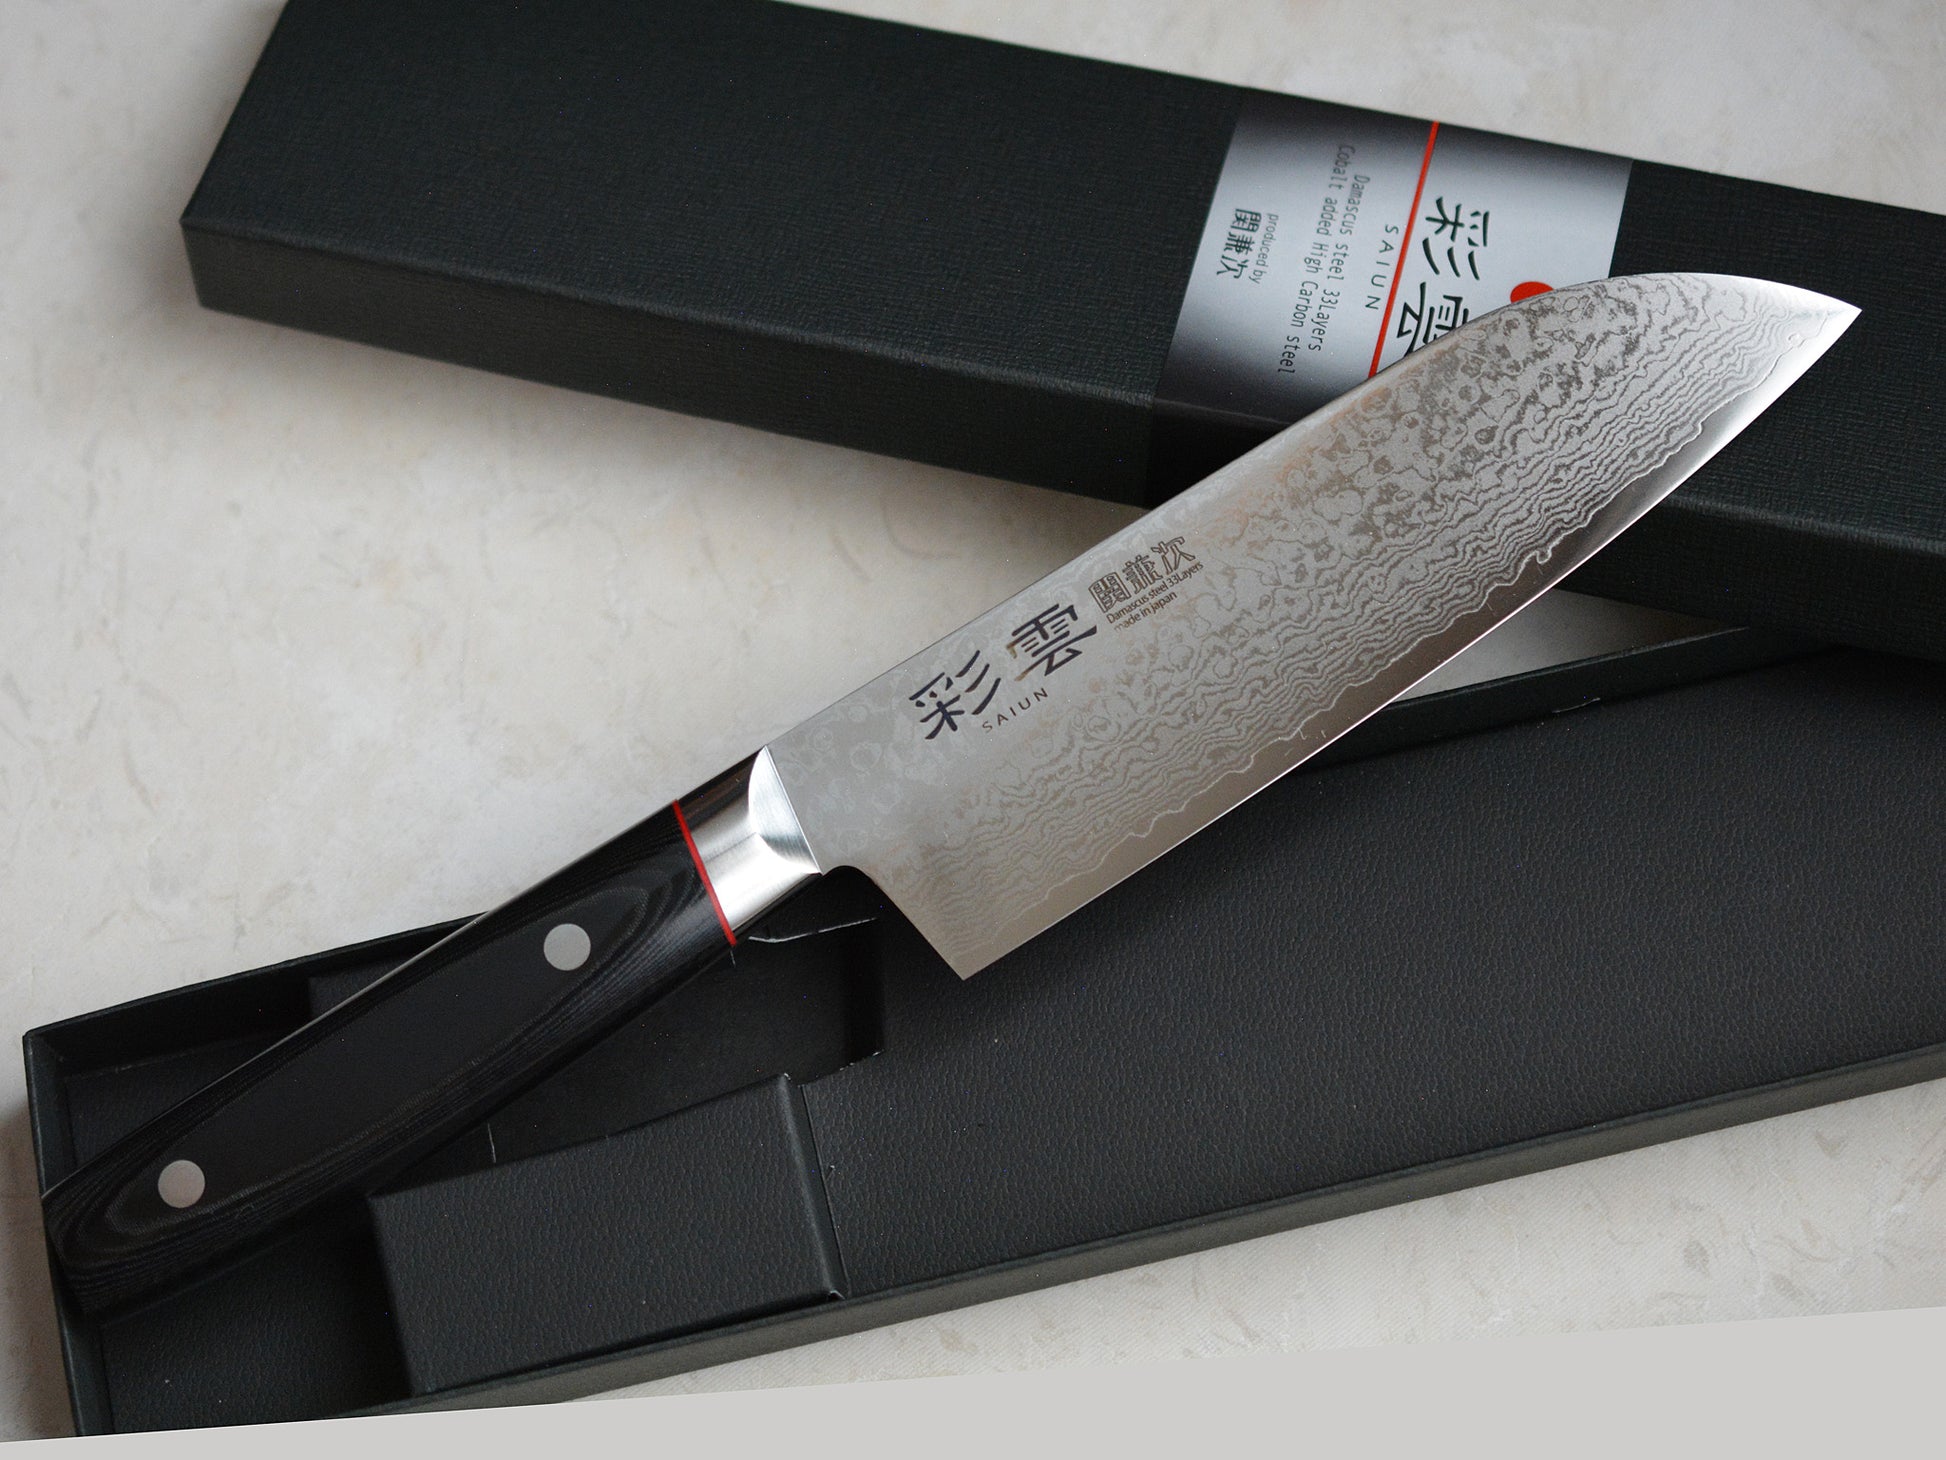 Llena tu cocina de tradición japonesa con este cuchillo santoku rebajado en